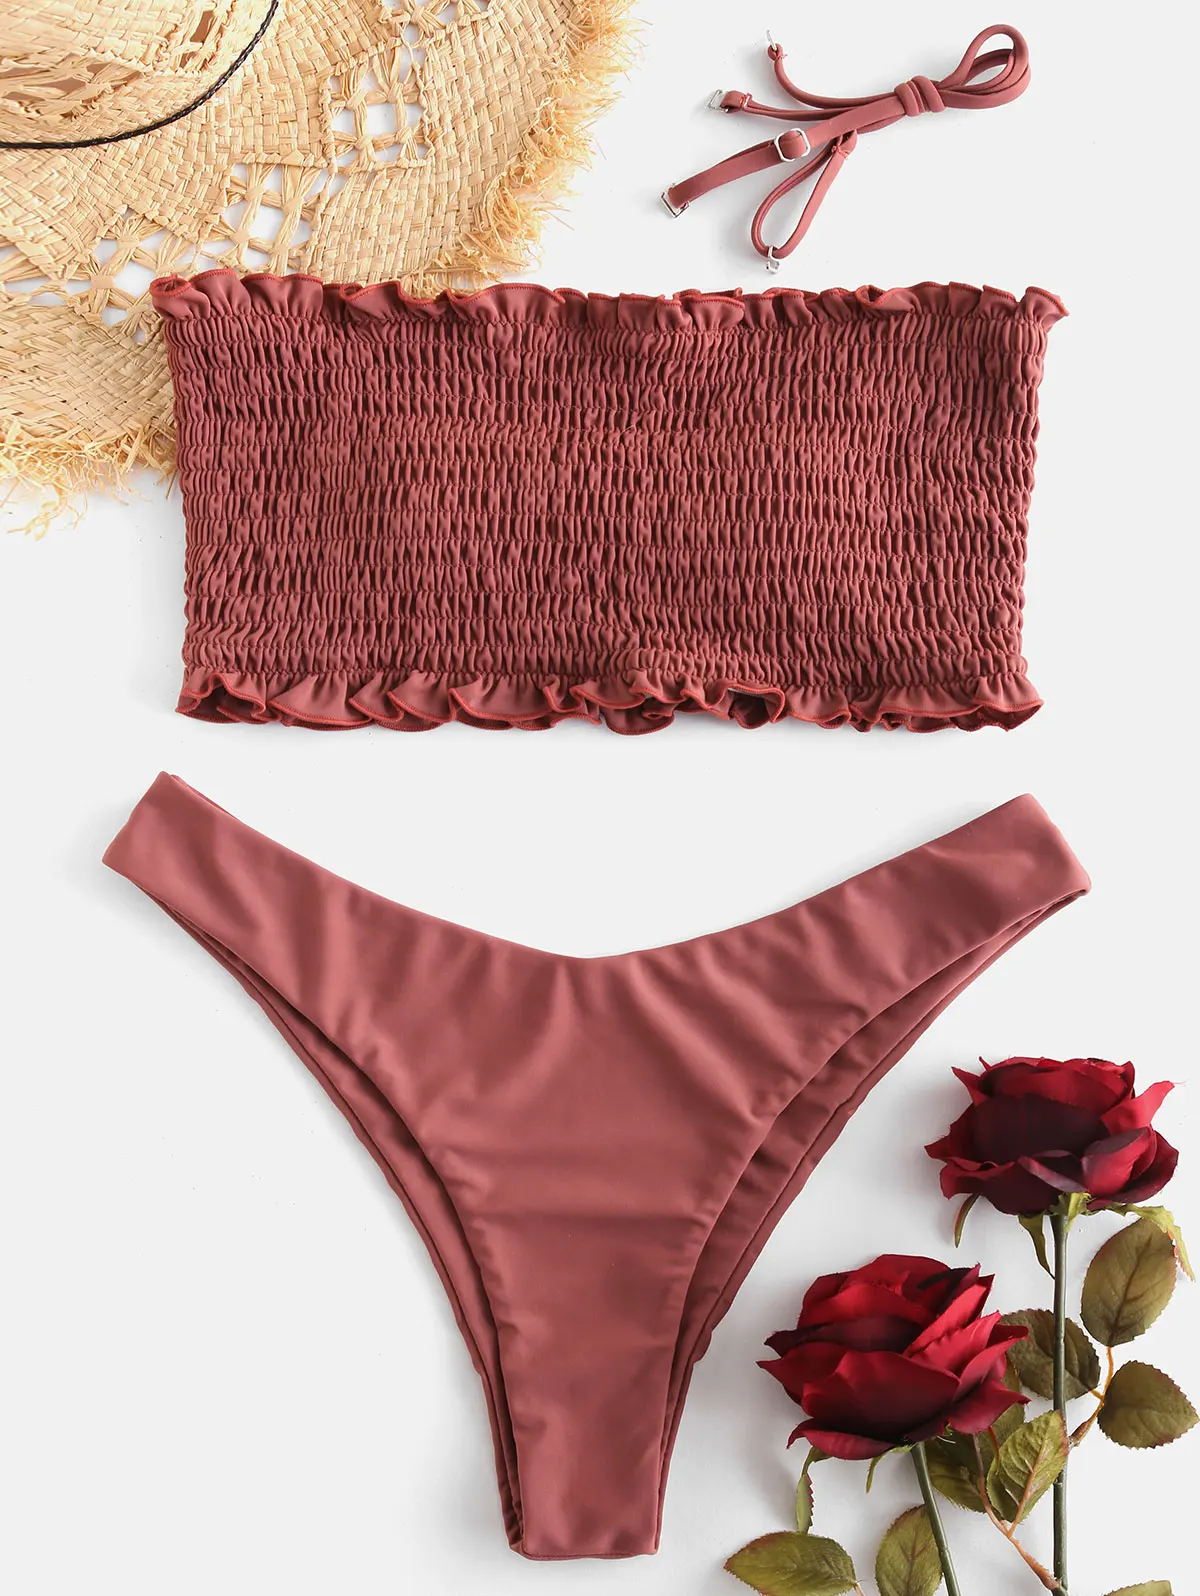 ZAFUL, сексуальный купальник, пляжный костюм, с оборками, со сборками, бандо, комплект бикини, купальный костюм, без бретелек, мягкий женский купальник, пляжная одежда - Цвет: Rosy Finch